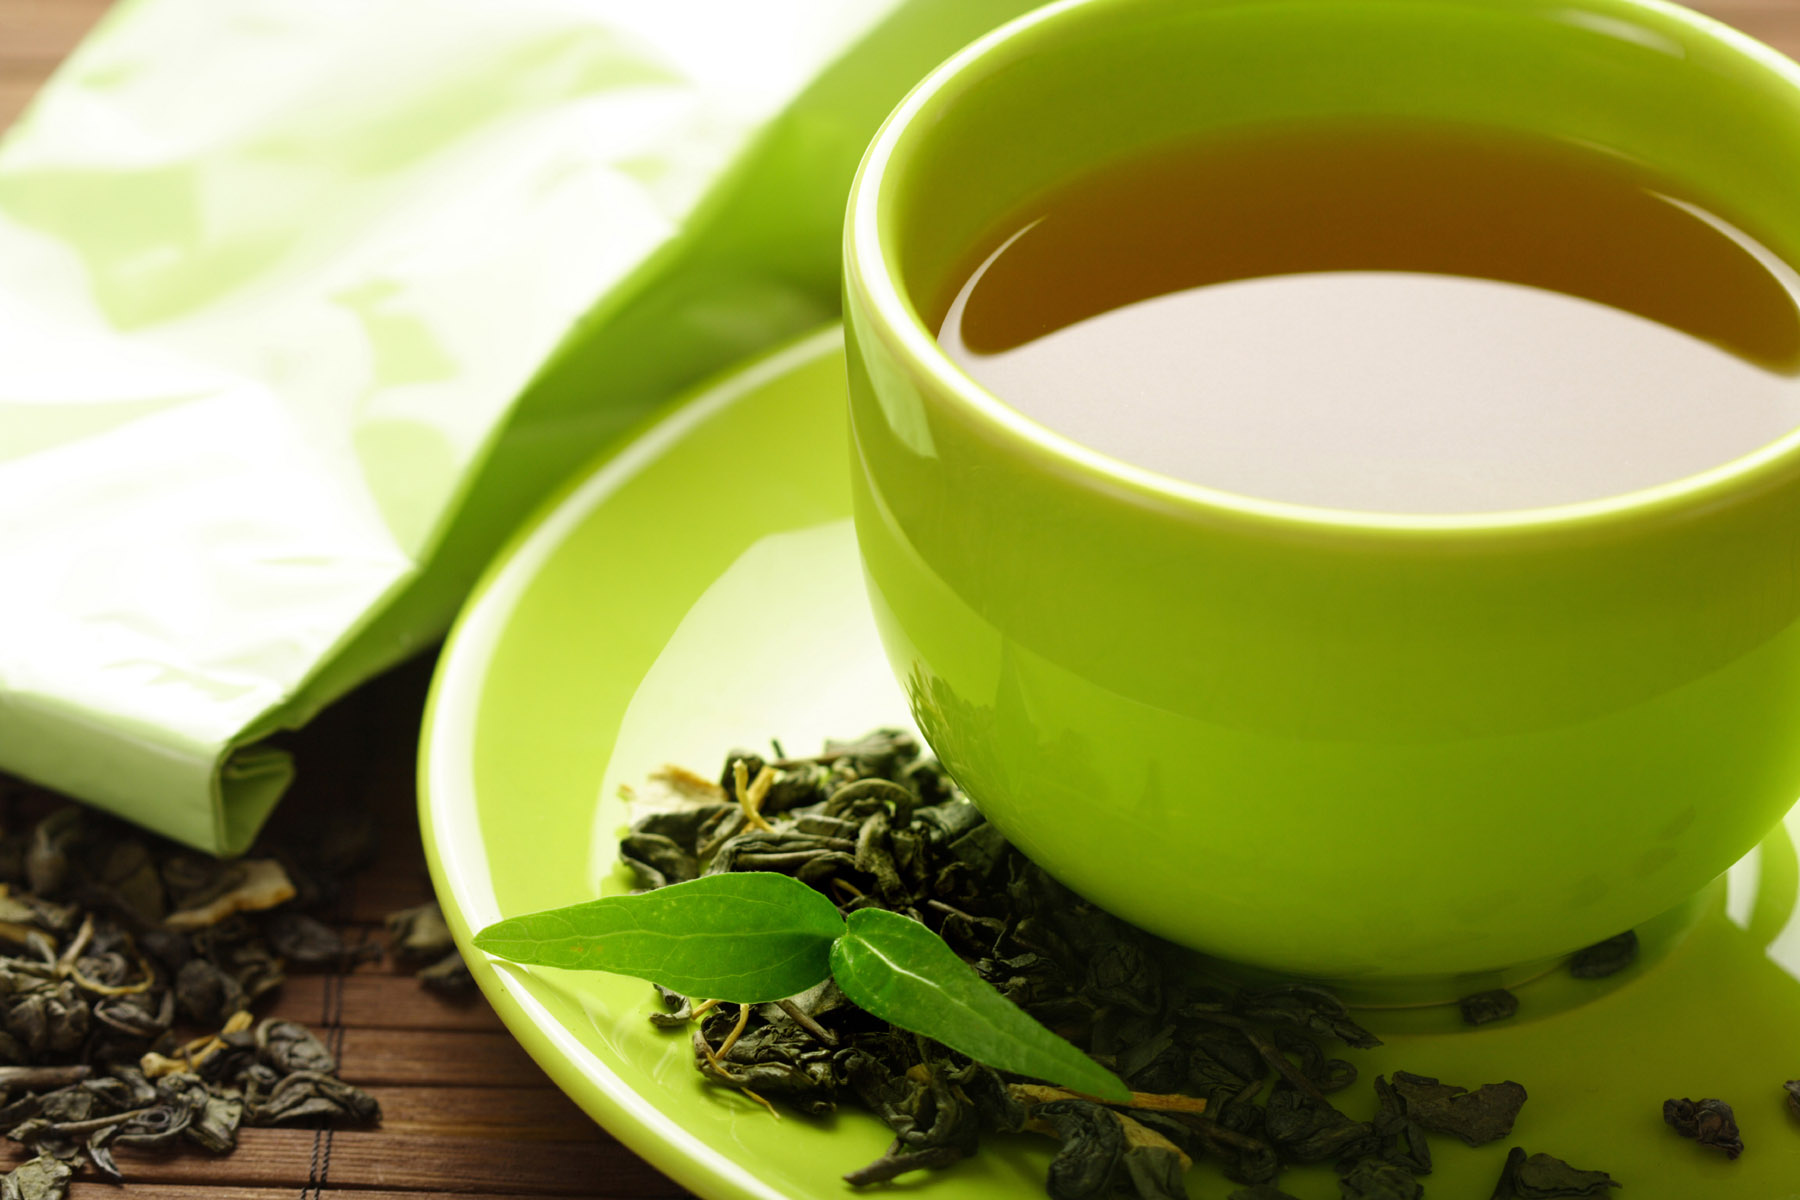 هل تريد أن تستفيد من الشاي الأخضر؟ إذن اتبع هذه النصائح